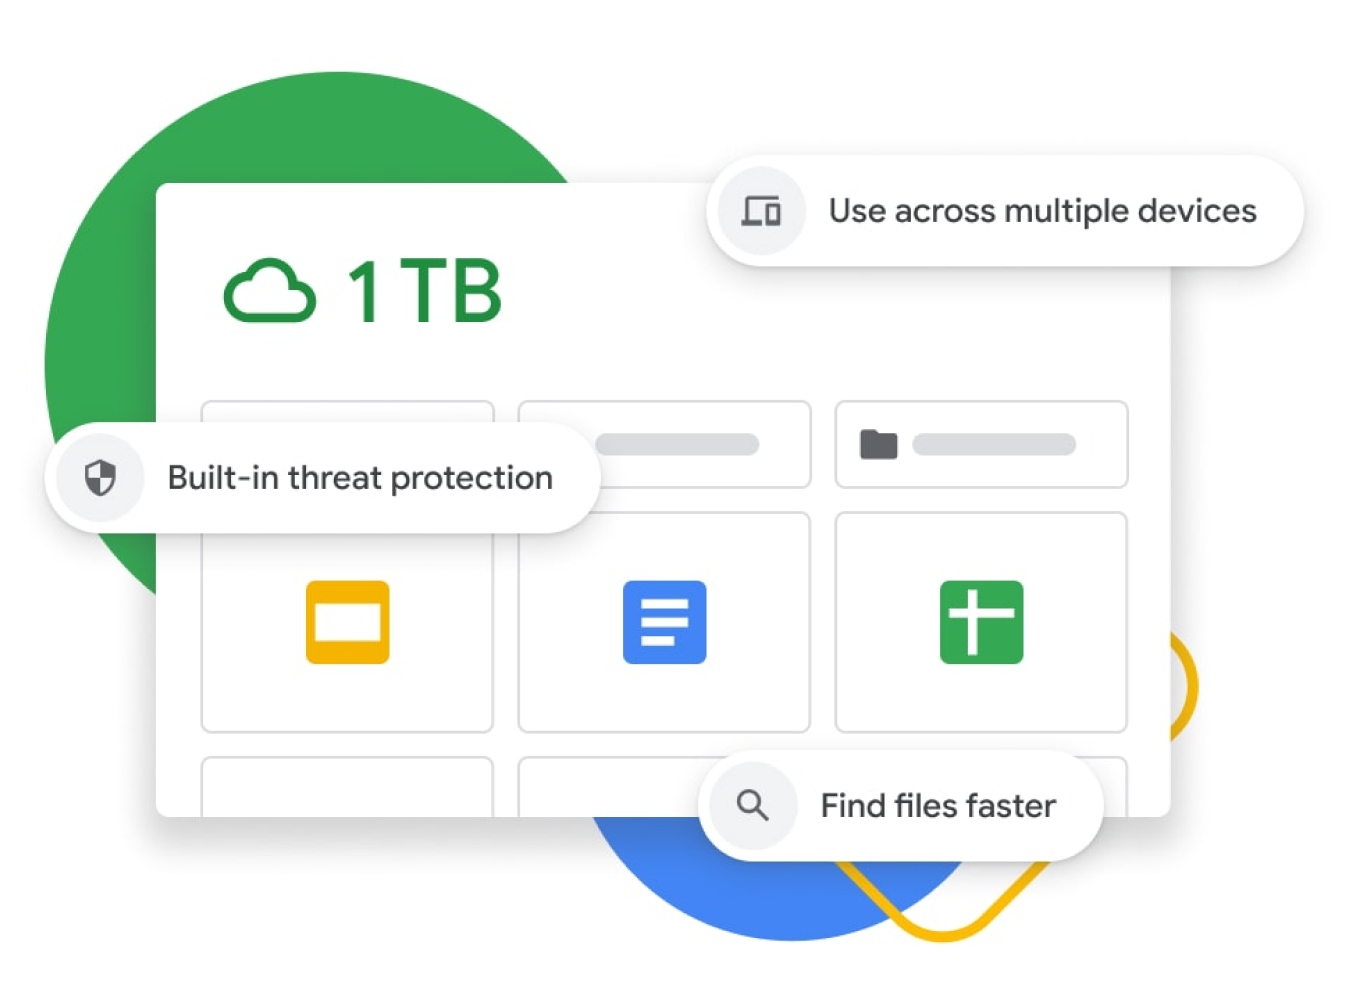 رسم توضيحي للوحة البيانات في Google Drive مع مساحة تخزين تبلغ 1 تيرابايت، وحماية مدمجة من التهديدات، وميزات لمزامنة أجهزة متعددة وتحسين البحث 